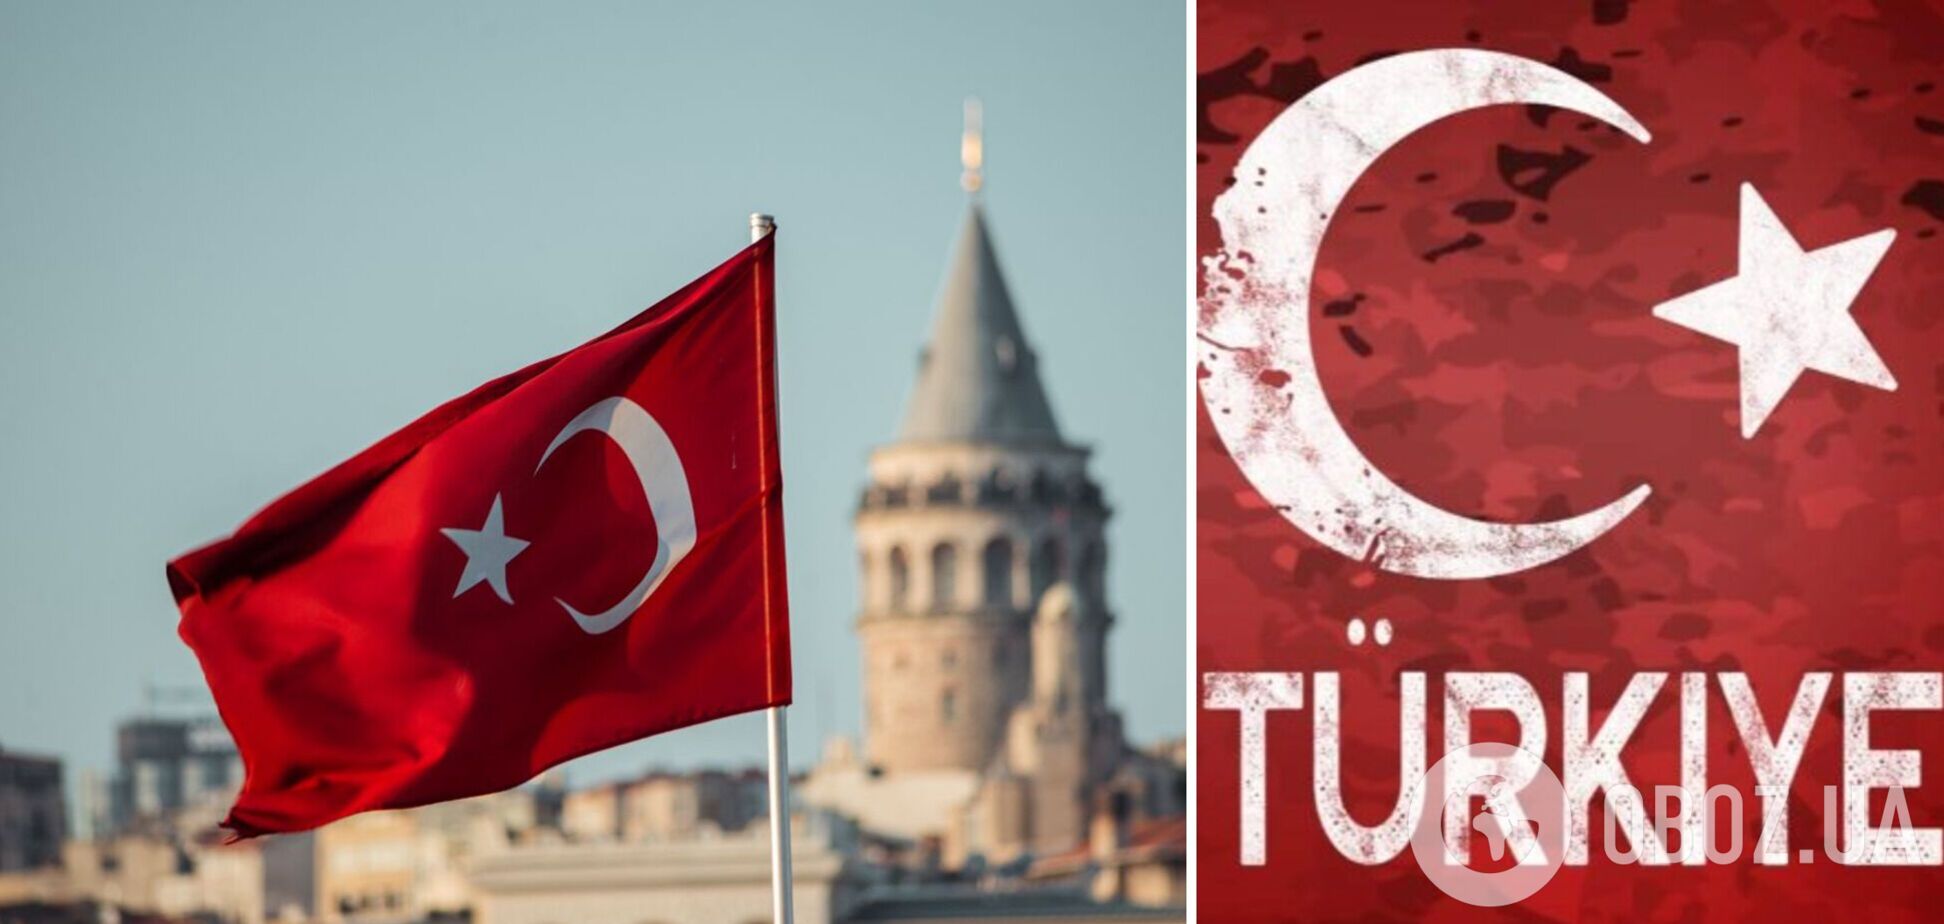 Международное название Турции изменили: теперь Türkiye вместо Turkey